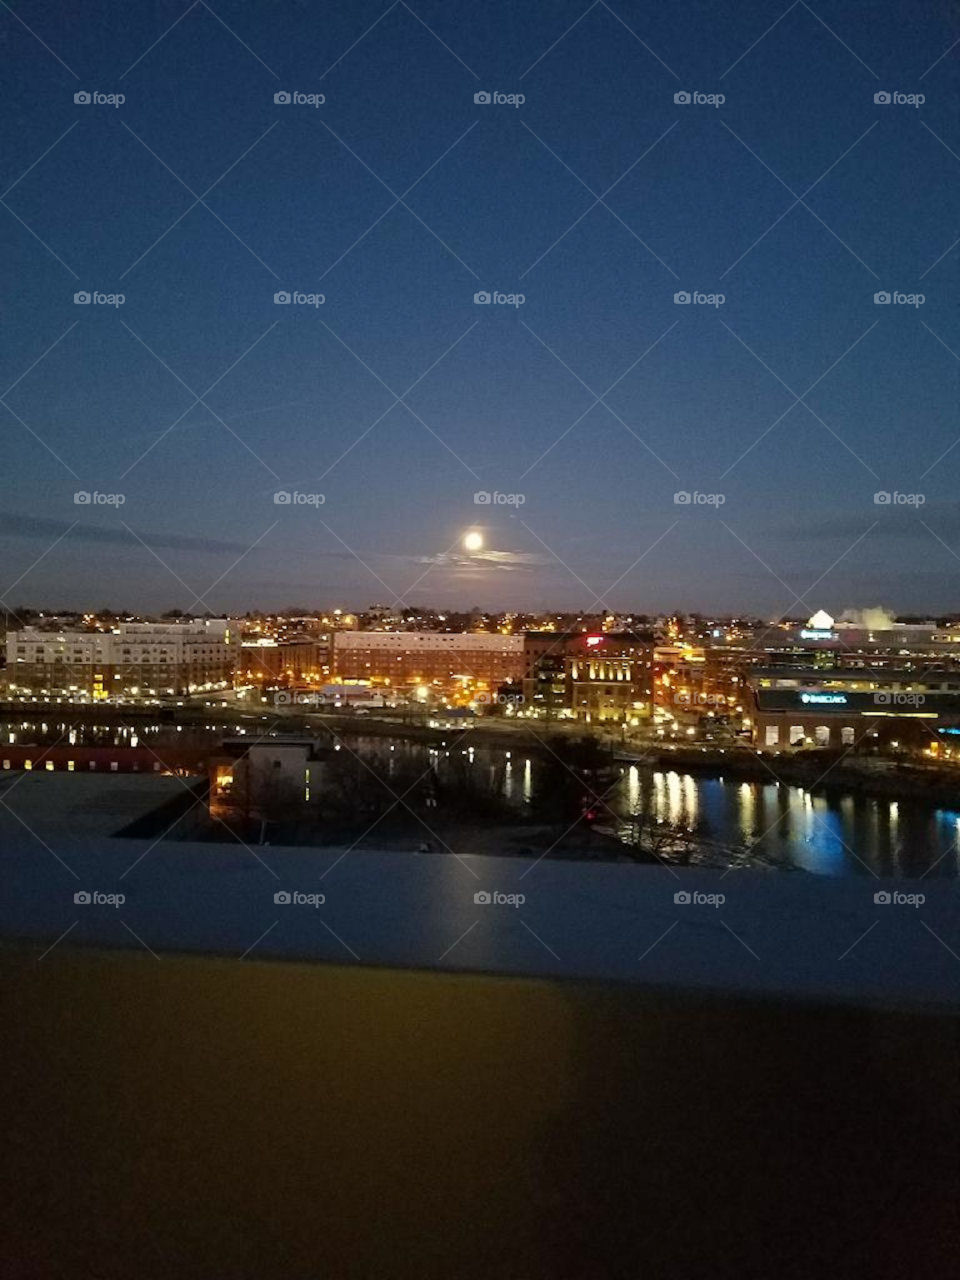 Full moon over city